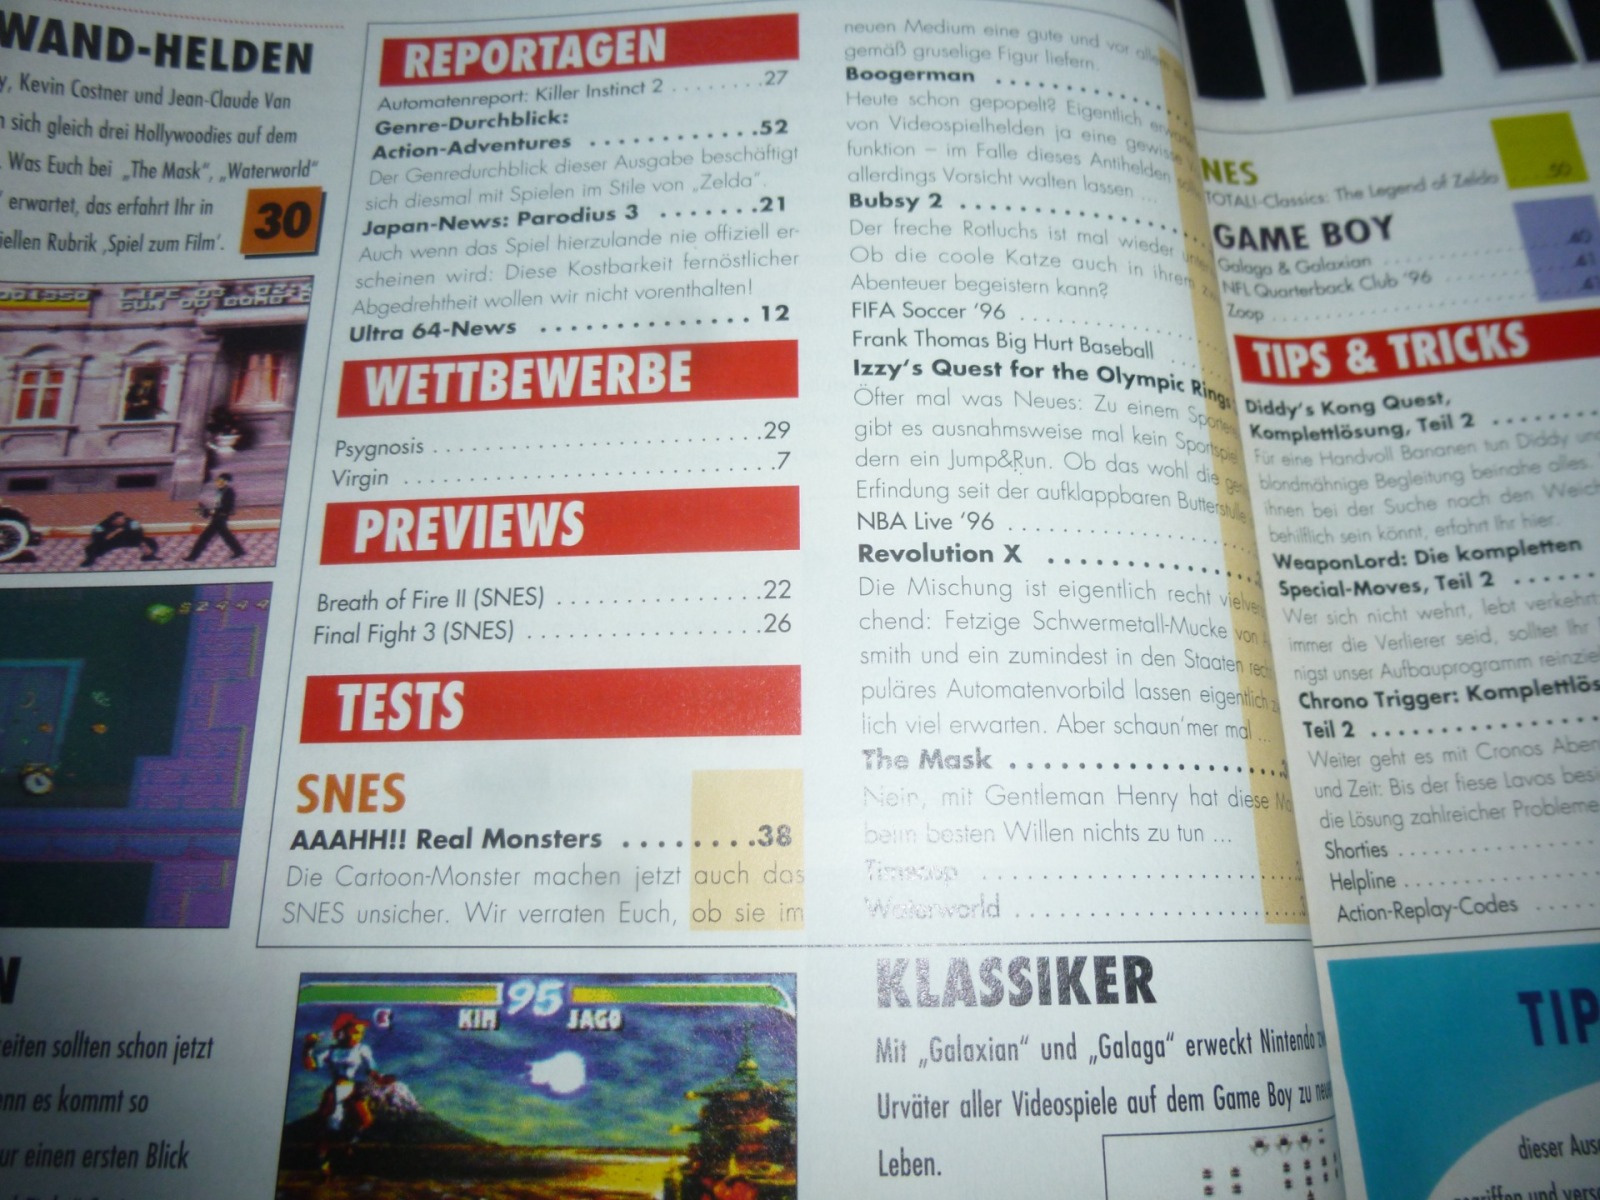 TOTAL Das unabhängige Magazin - 100 Nintendo - Ausgabe 3/96 1996 2